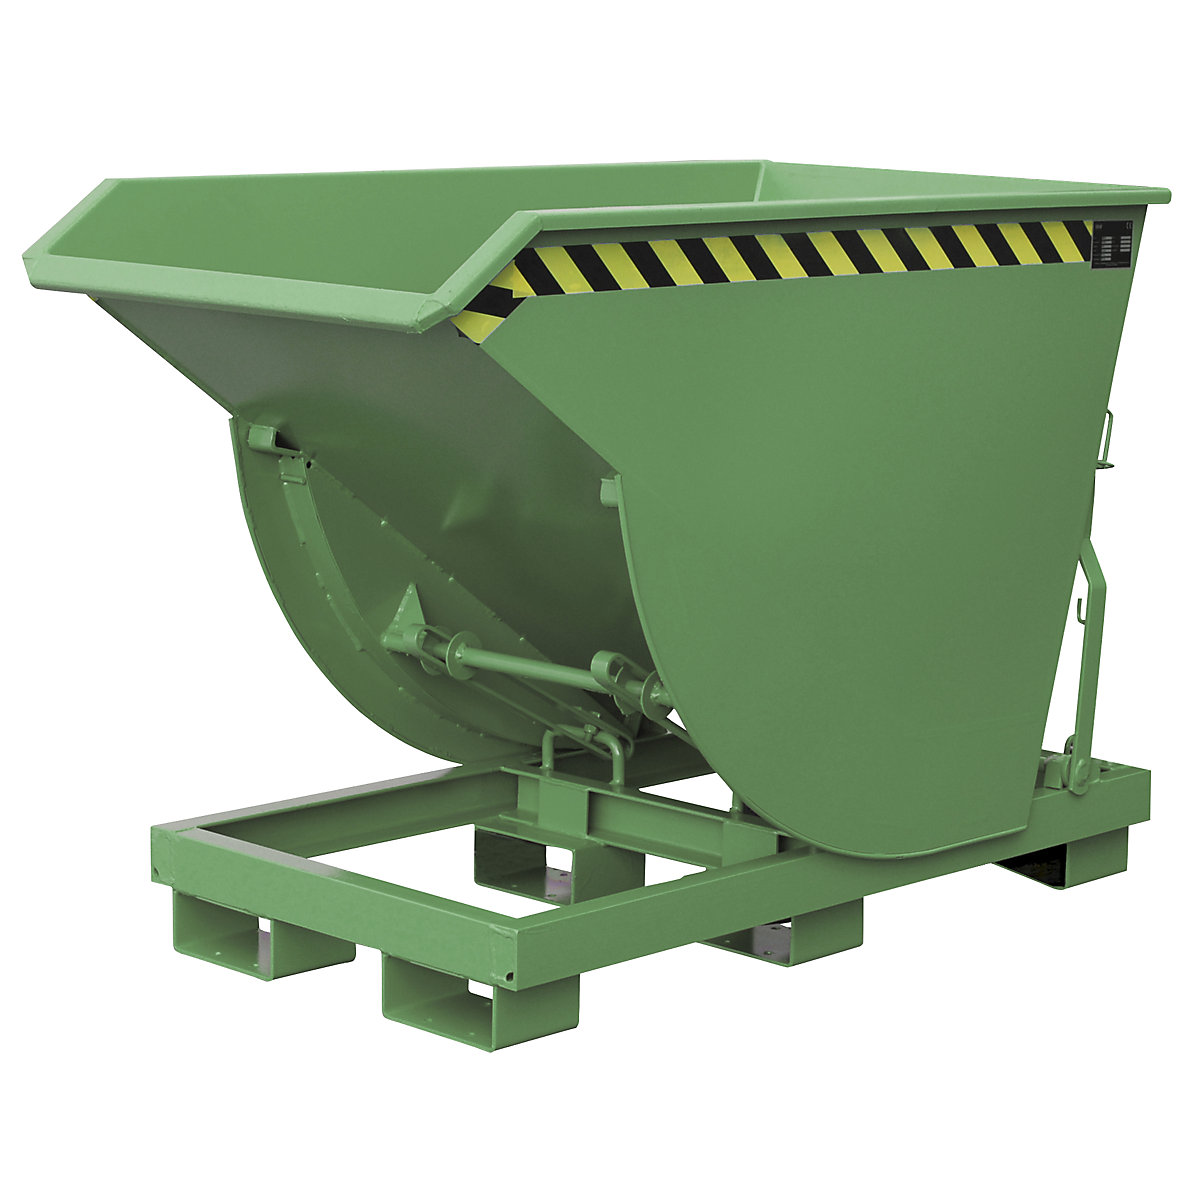 Volquete, modelo estrecho – eurokraft pro, capacidad 0,5 m³, carga máx. 2500 kg, verde reseda RAL 6011-8